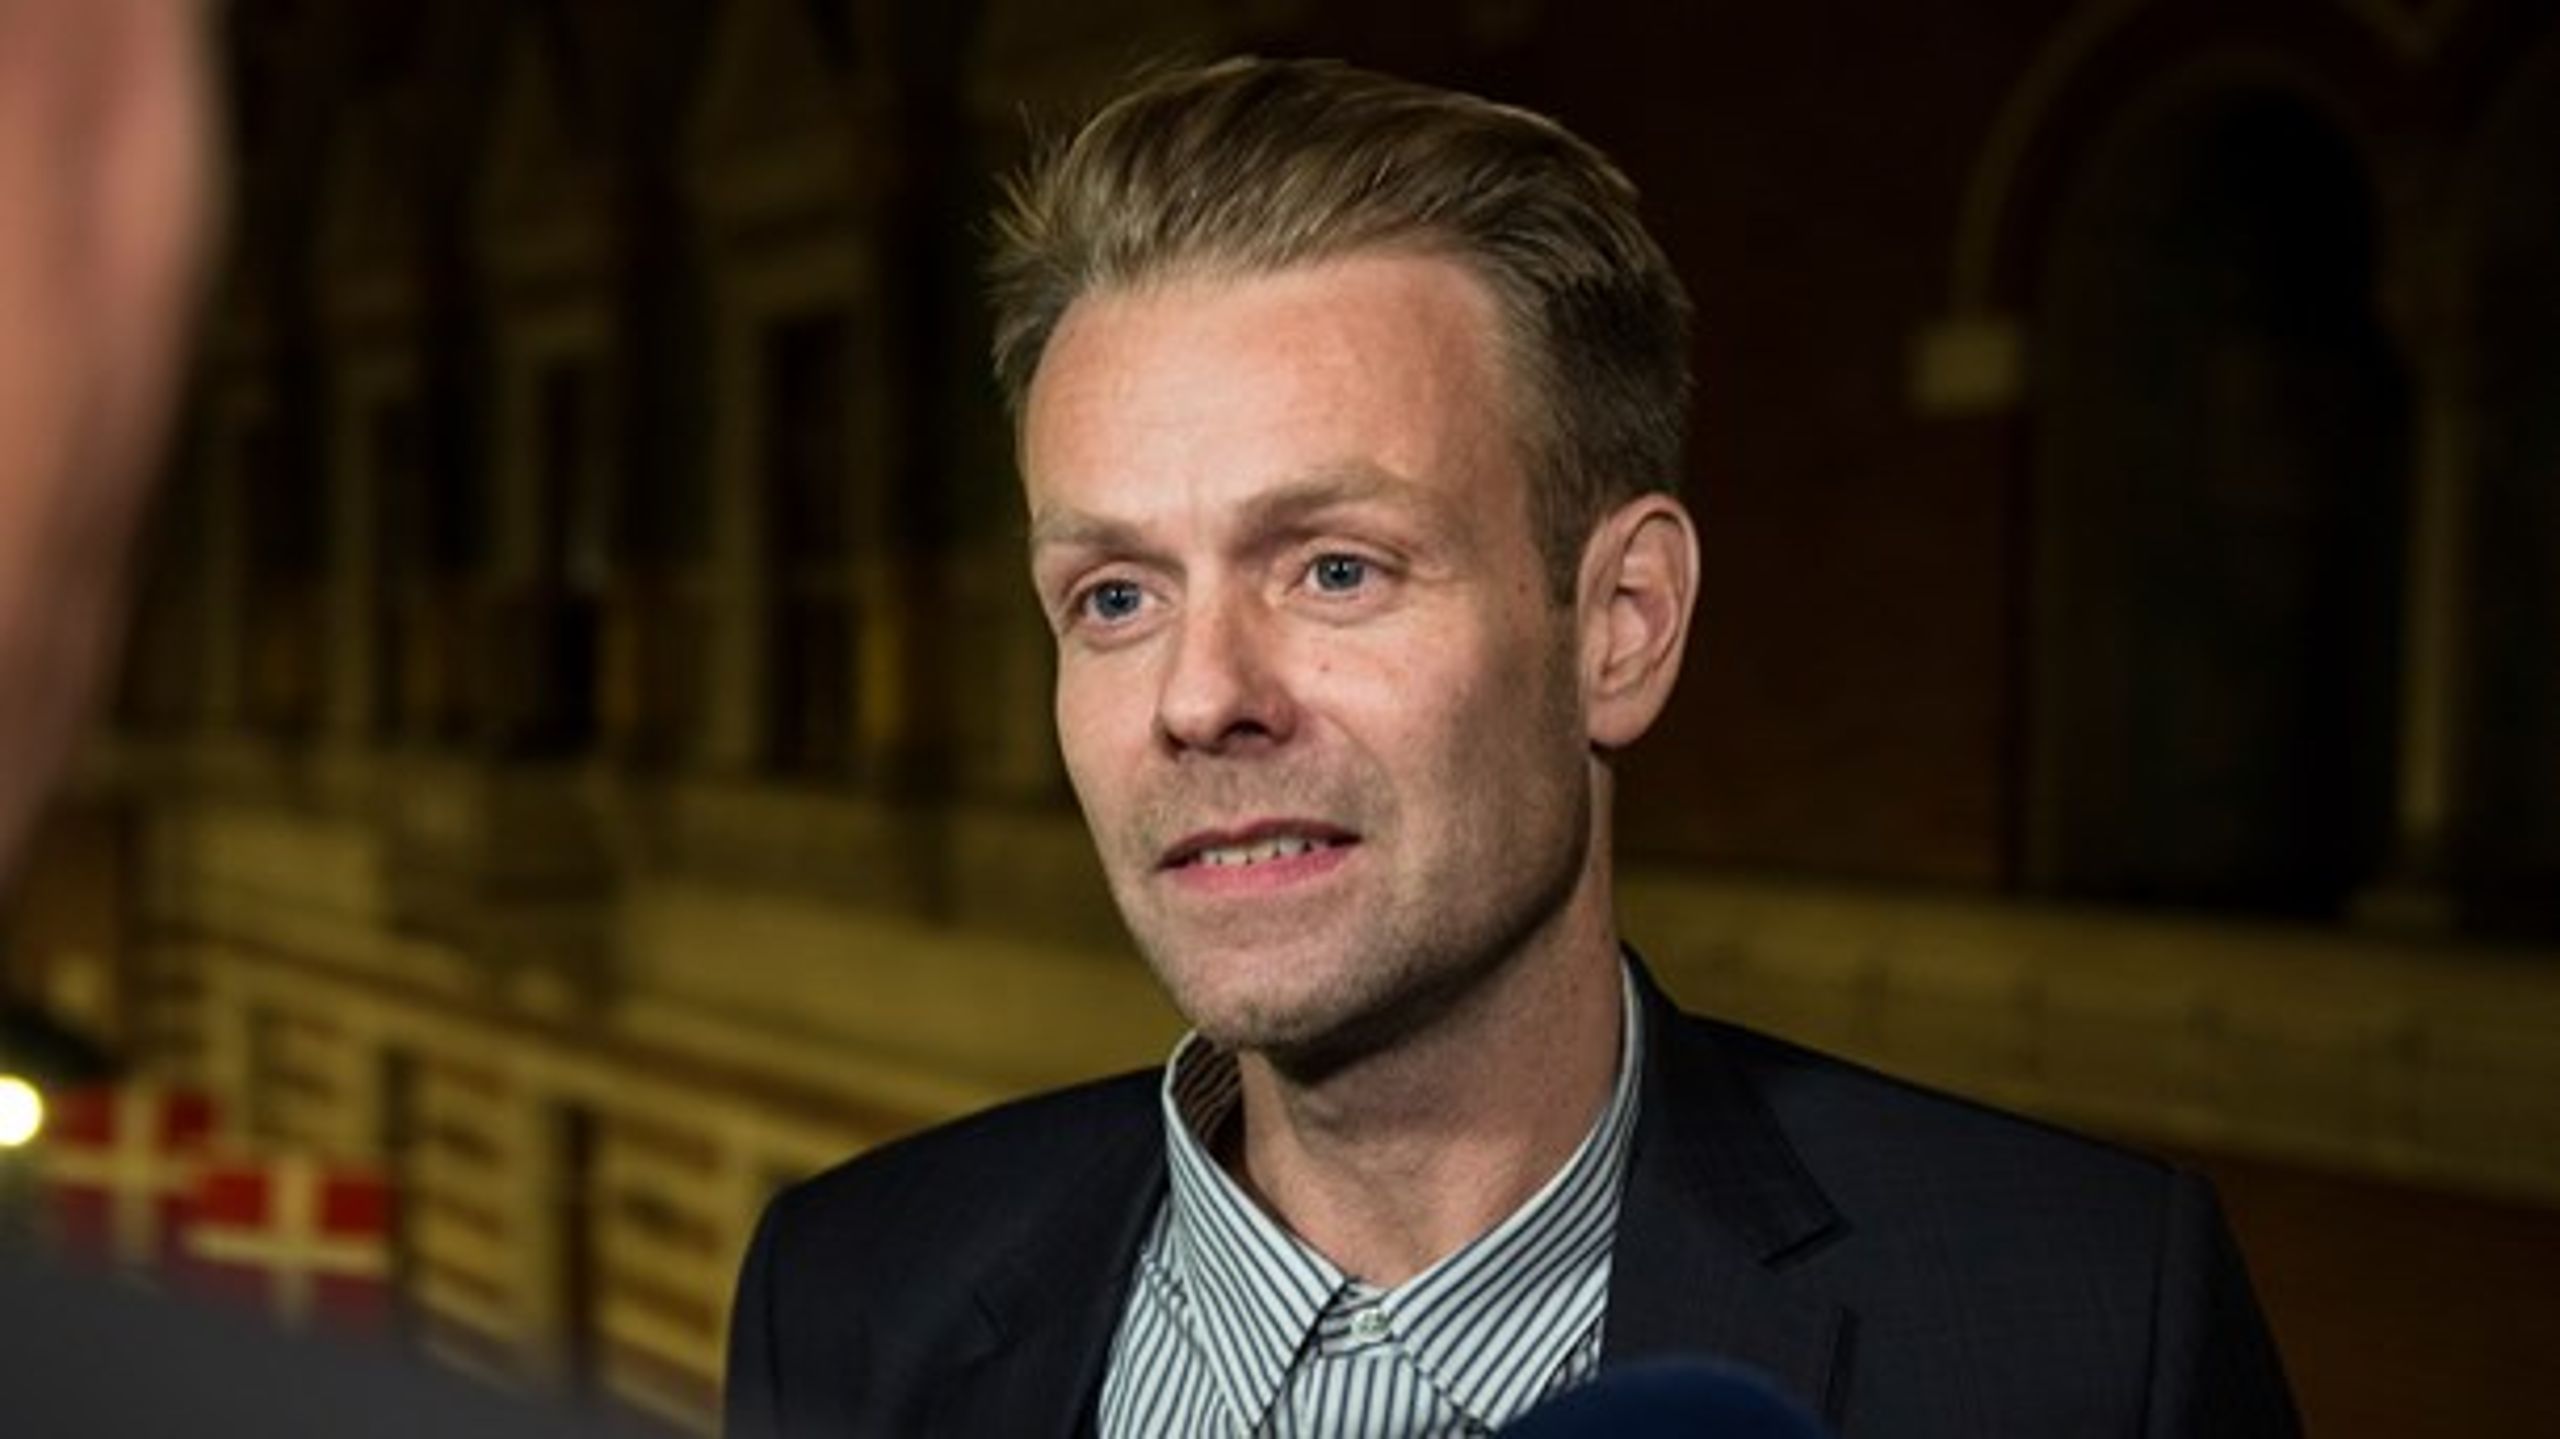 Alternativets spidskandidat, Nico Grünfeld, glædede sig efter valgnattens forhandlinger over, at partiet ser ud til at få nøglerne til Kultur- og Fritidsforvaltningen i København.